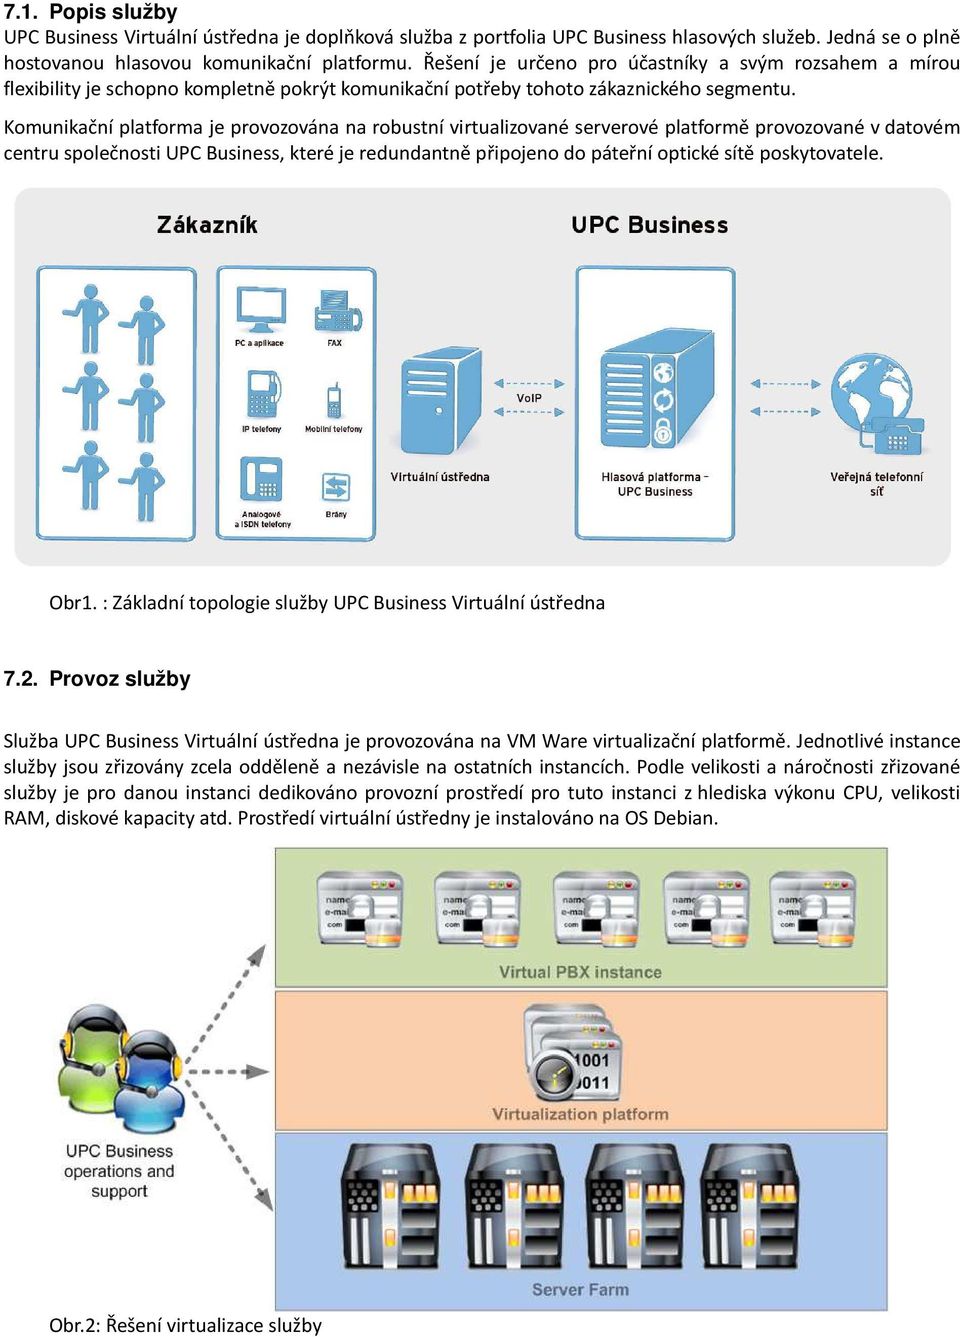 Komunikační platforma je provozována na robustní virtualizované serverové platformě provozované v datovém centru společnosti UPC Business, které je redundantně připojeno do páteřní optické sítě